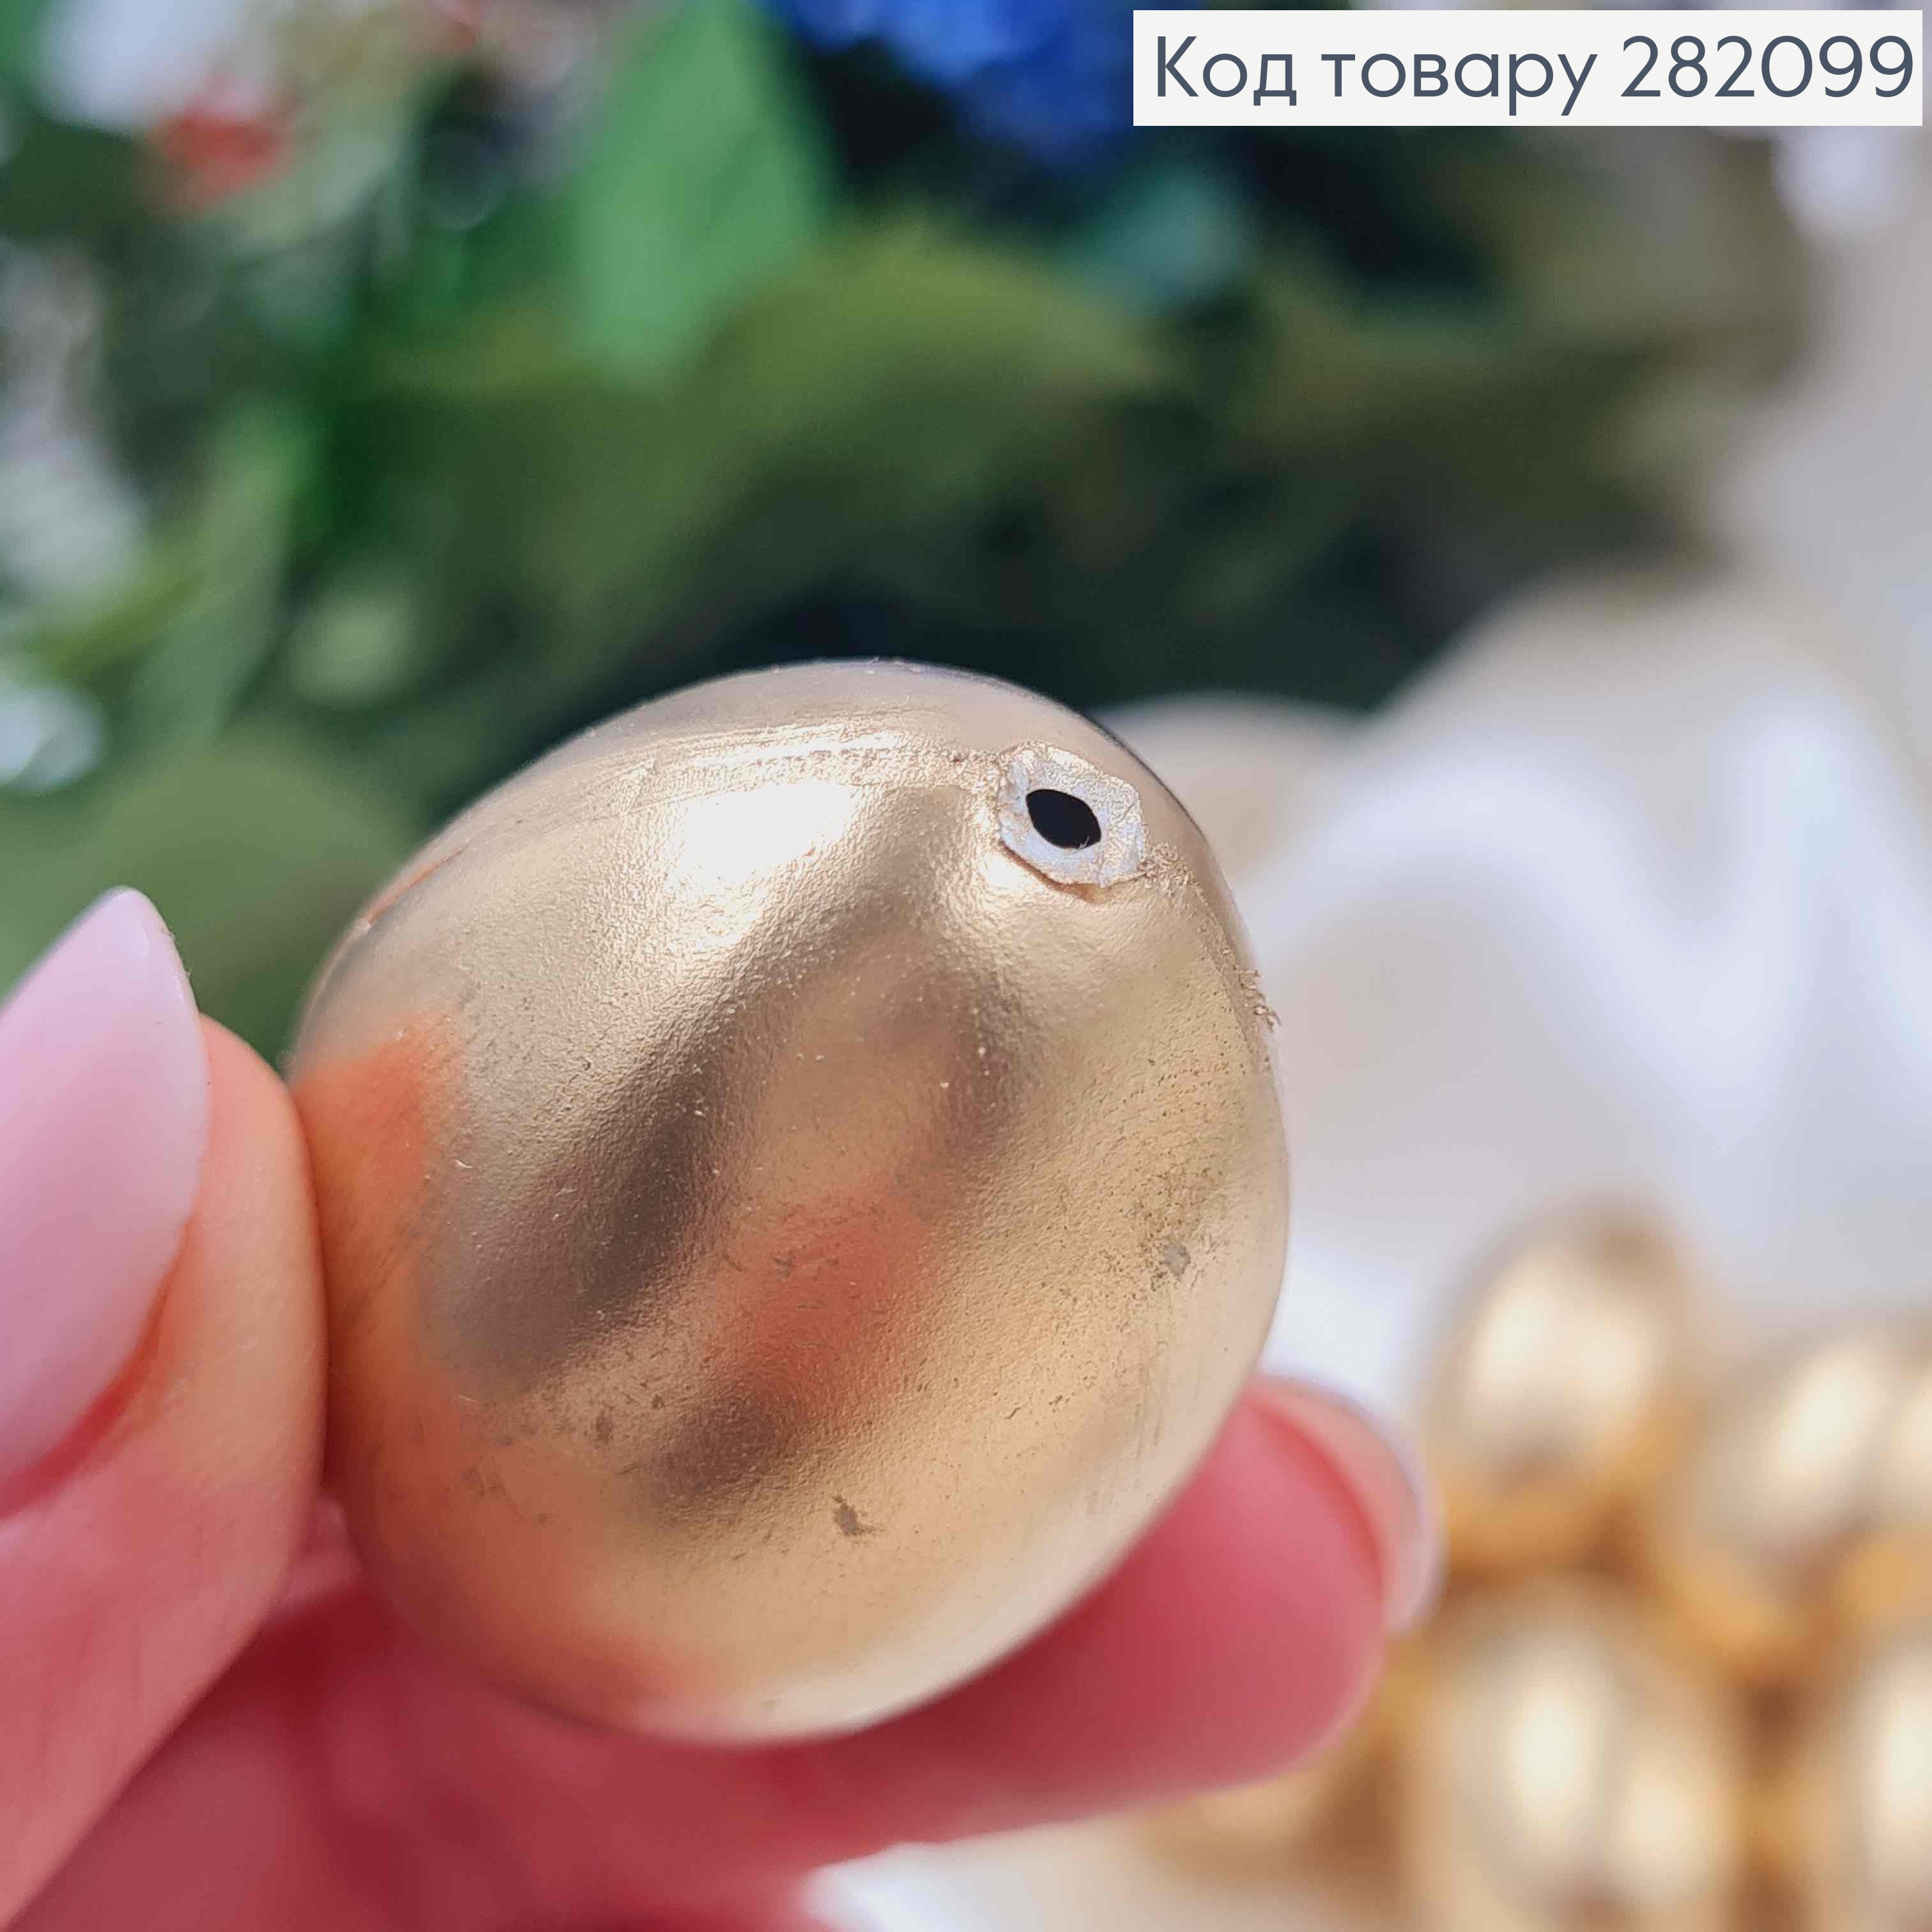 Яйцо пластиковое (6шт)ЗОЛОТОГО цвета, как перепелиное, 3,8*2,7см, Украина. 282099 фото 2